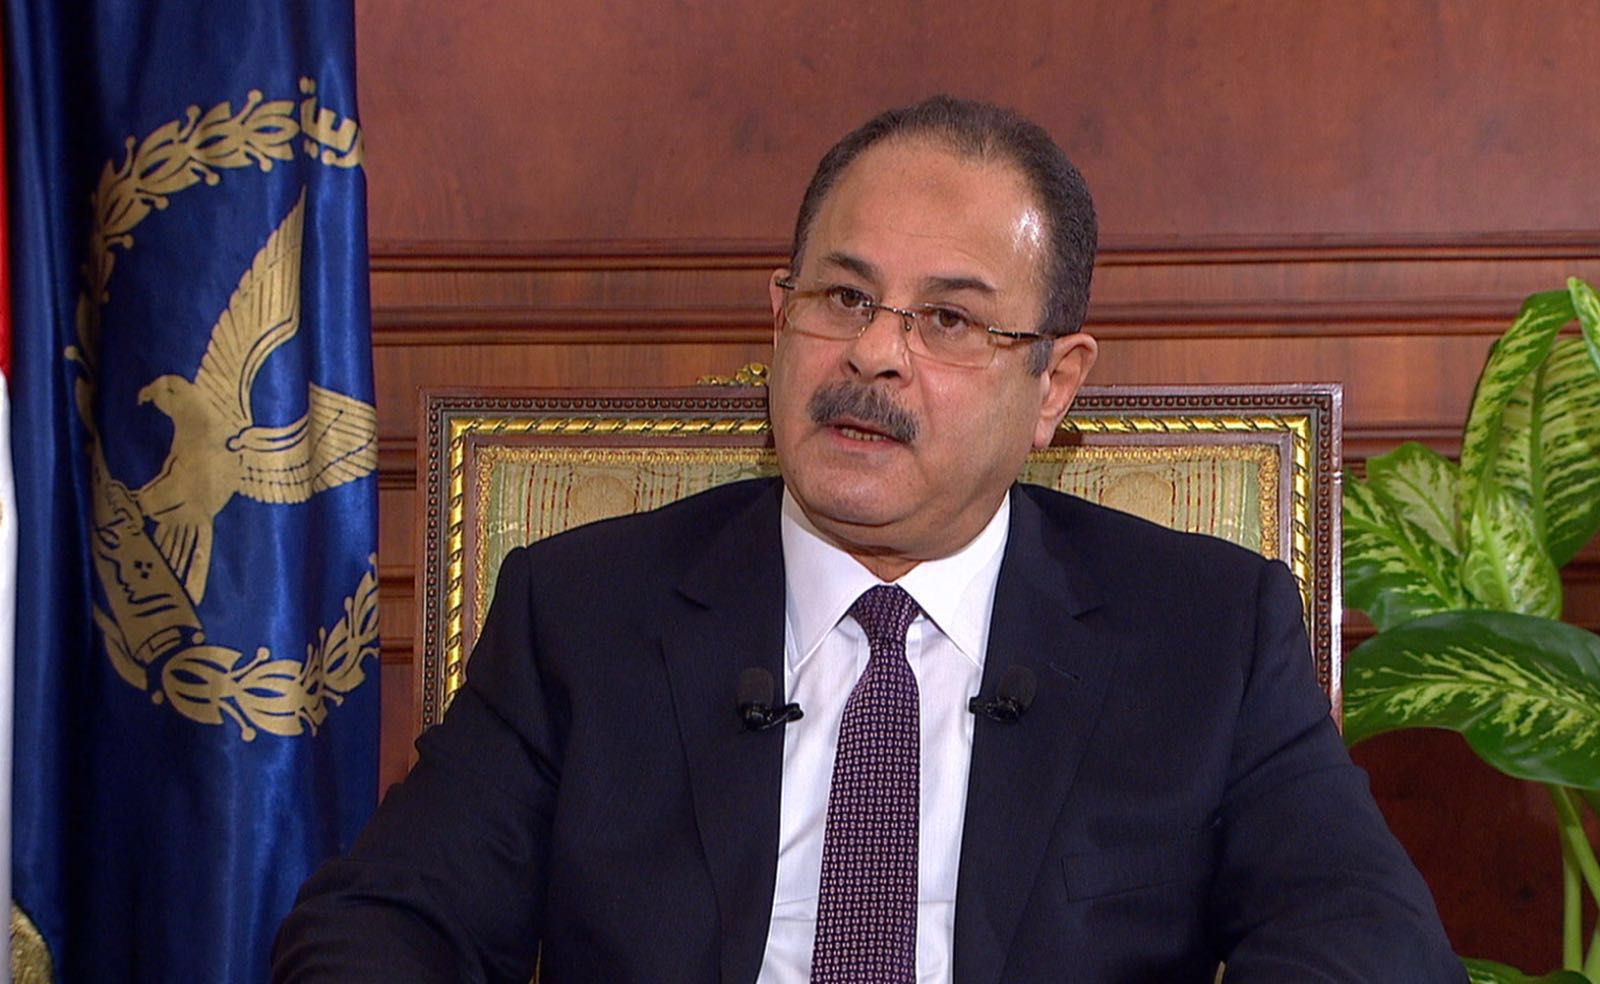   وزير الداخلية: حادث الإسكندرية محاولة يائسة لزعزعة أمن واستقرار البلاد